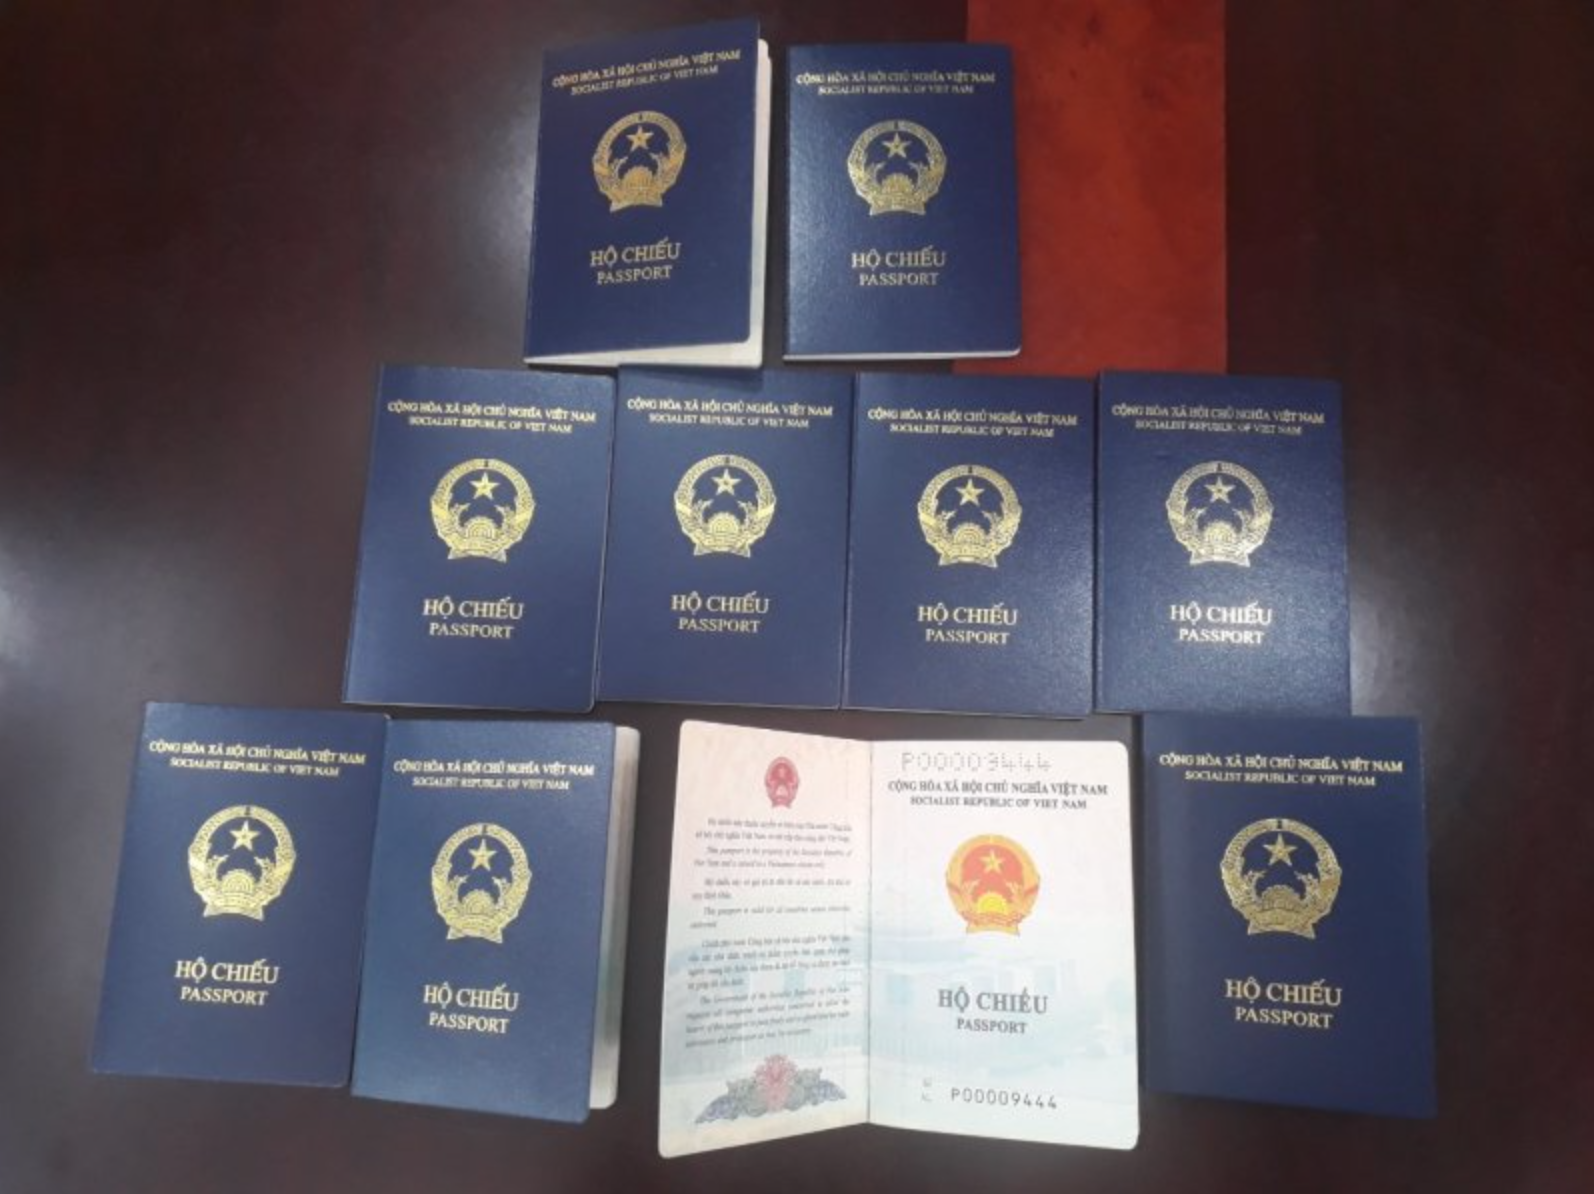 Đức chưa chấp nhận hộ chiếu bìa xanh tím than của Việt Nam vì thiếu nơi sinh? - Ảnh 1.